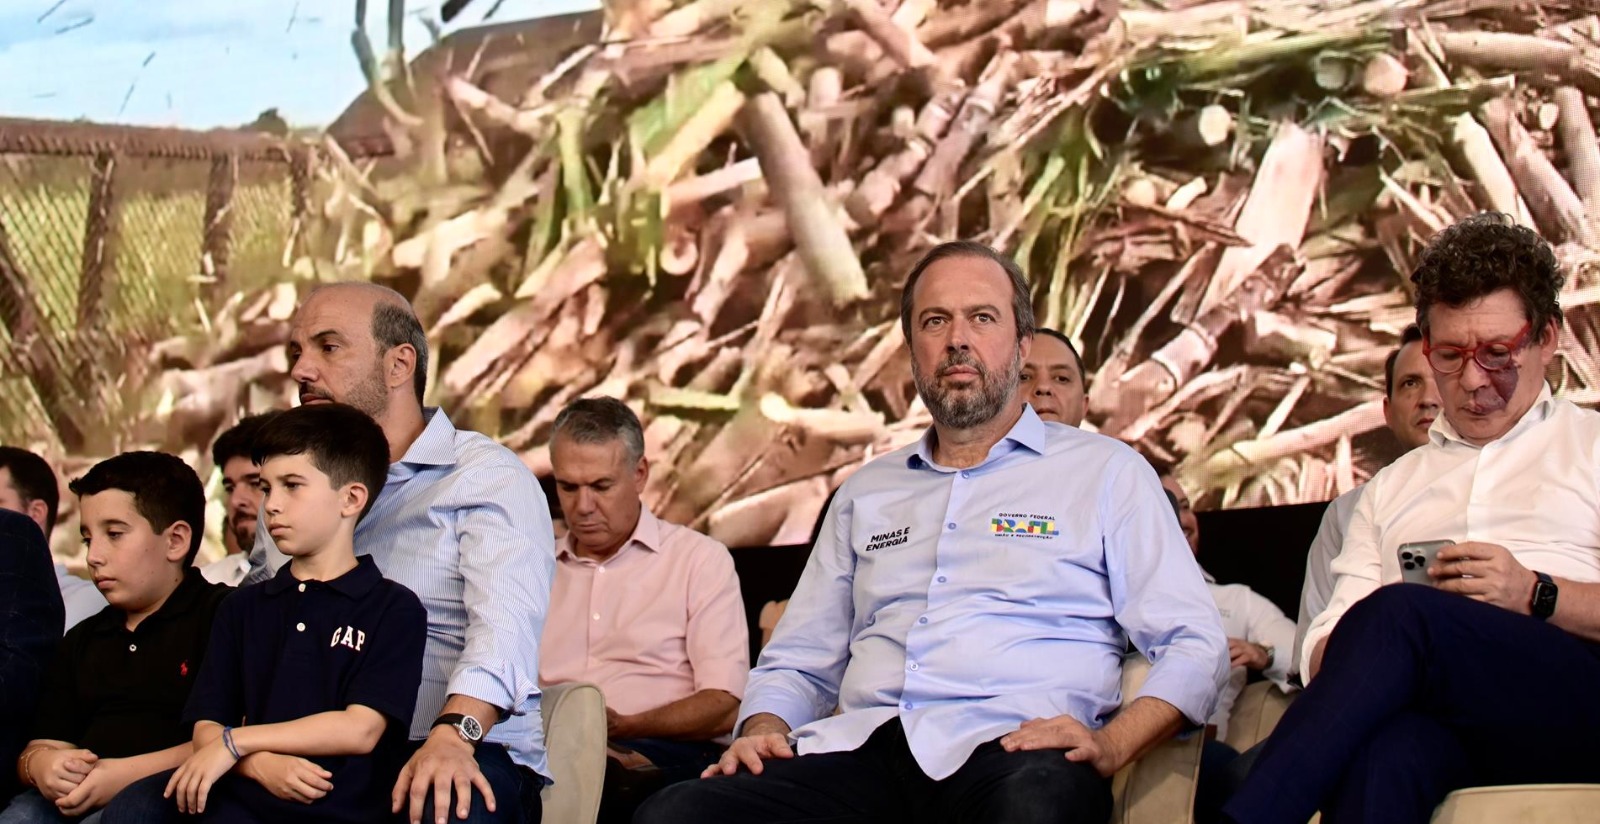 Cultura da cana-de-açúcar representa uma das mais importantes cadeias do agronegócio estadual